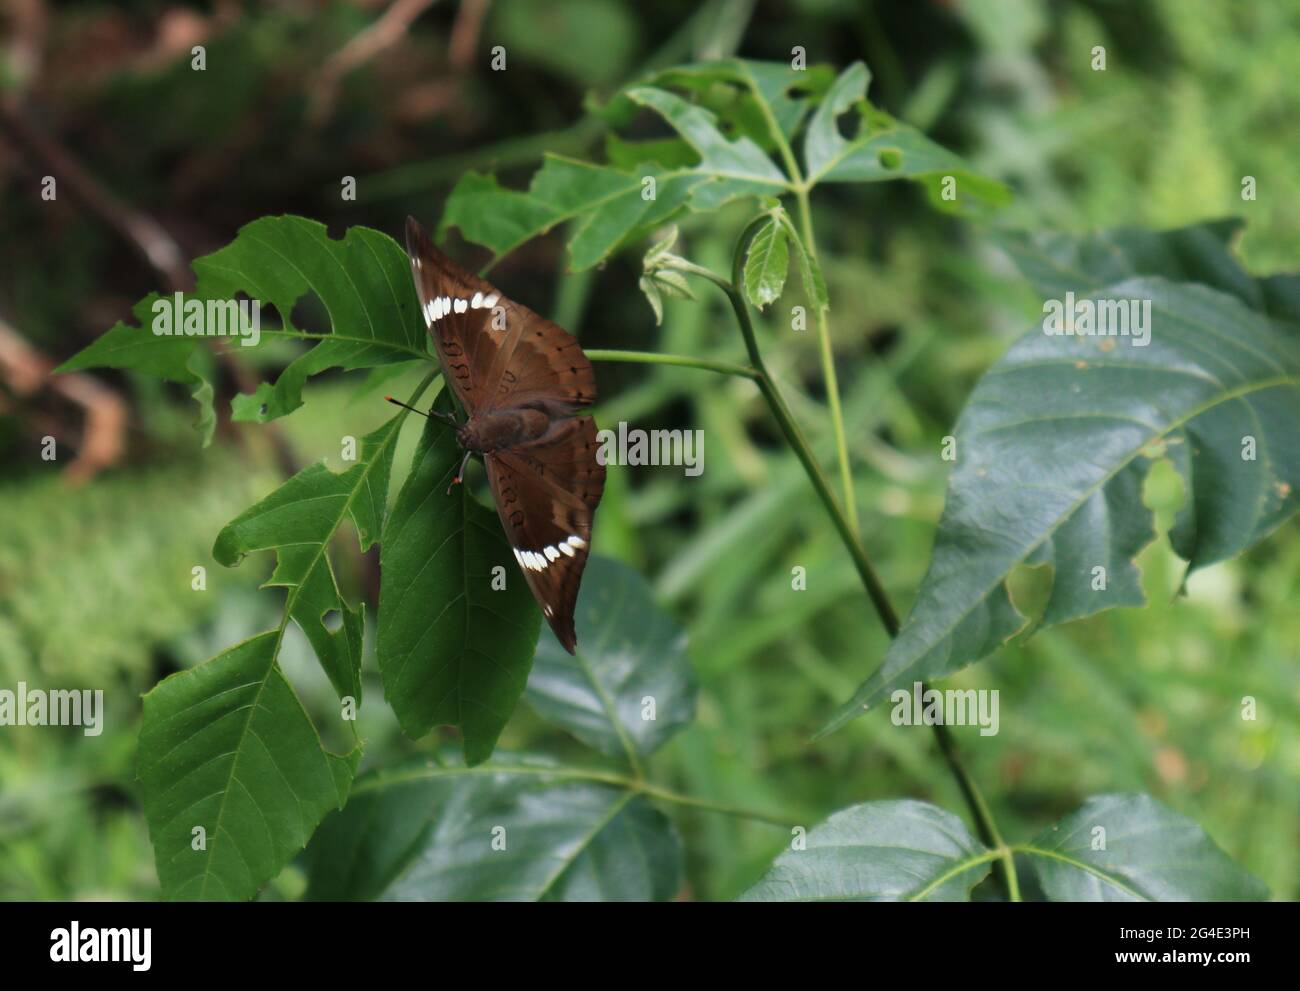 Primo piano di una rara farfalla marrone con macchie bianche sulle punte dell'ala su una foglia verde con il ramo Foto Stock